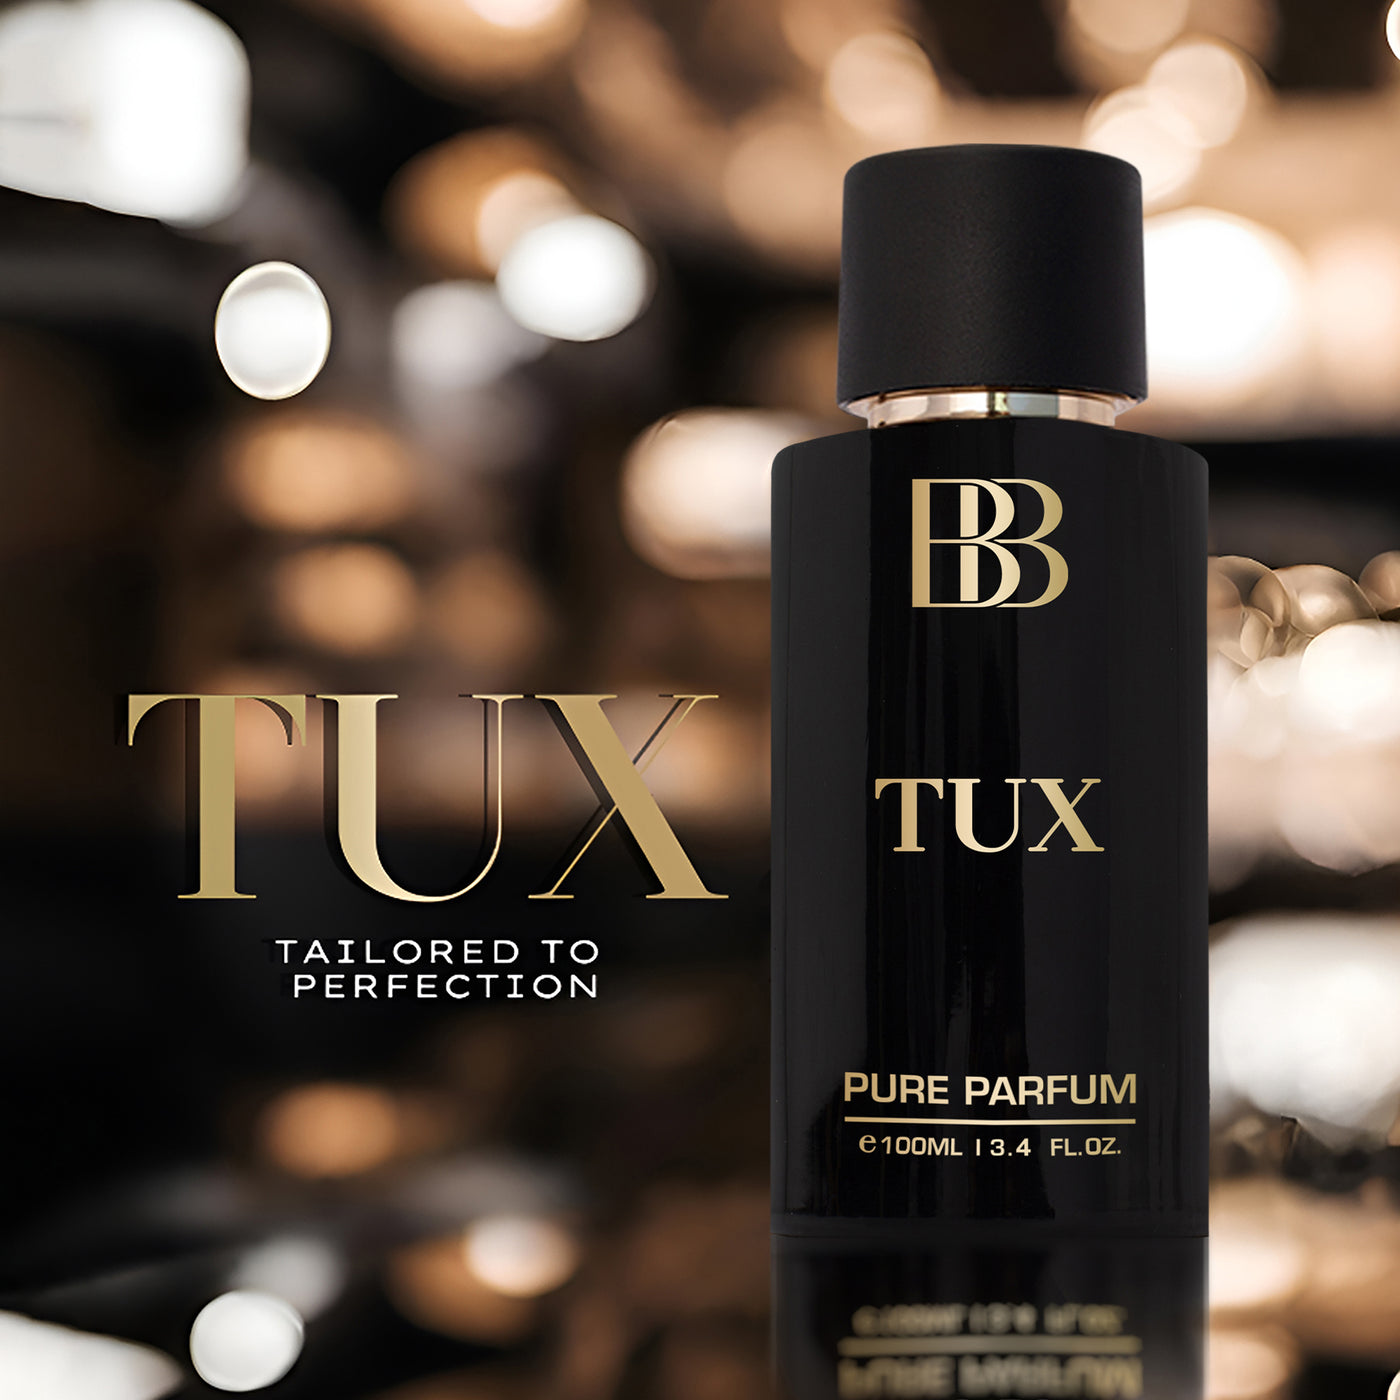 TUX & GENTLE MAN Pure Parfum Combo, 2 X 100ml